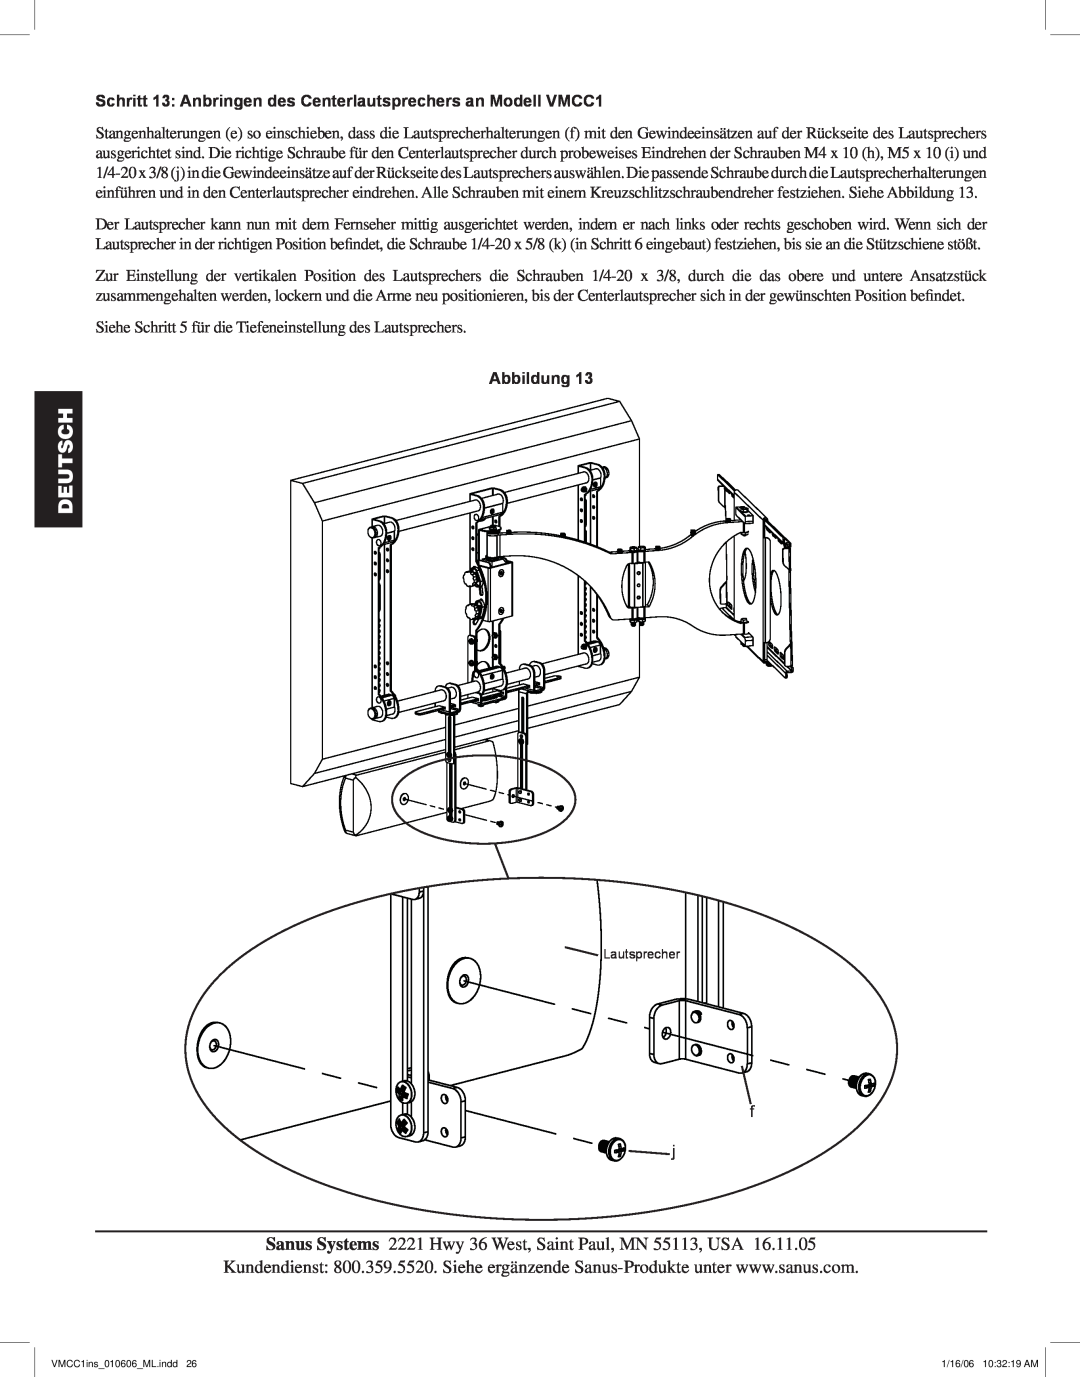 Sanus Systems manual Schritt 13 Anbringen des Centerlautsprechers an Modell VMCC1, Deutsch, Abbildung, Lautsprecher 